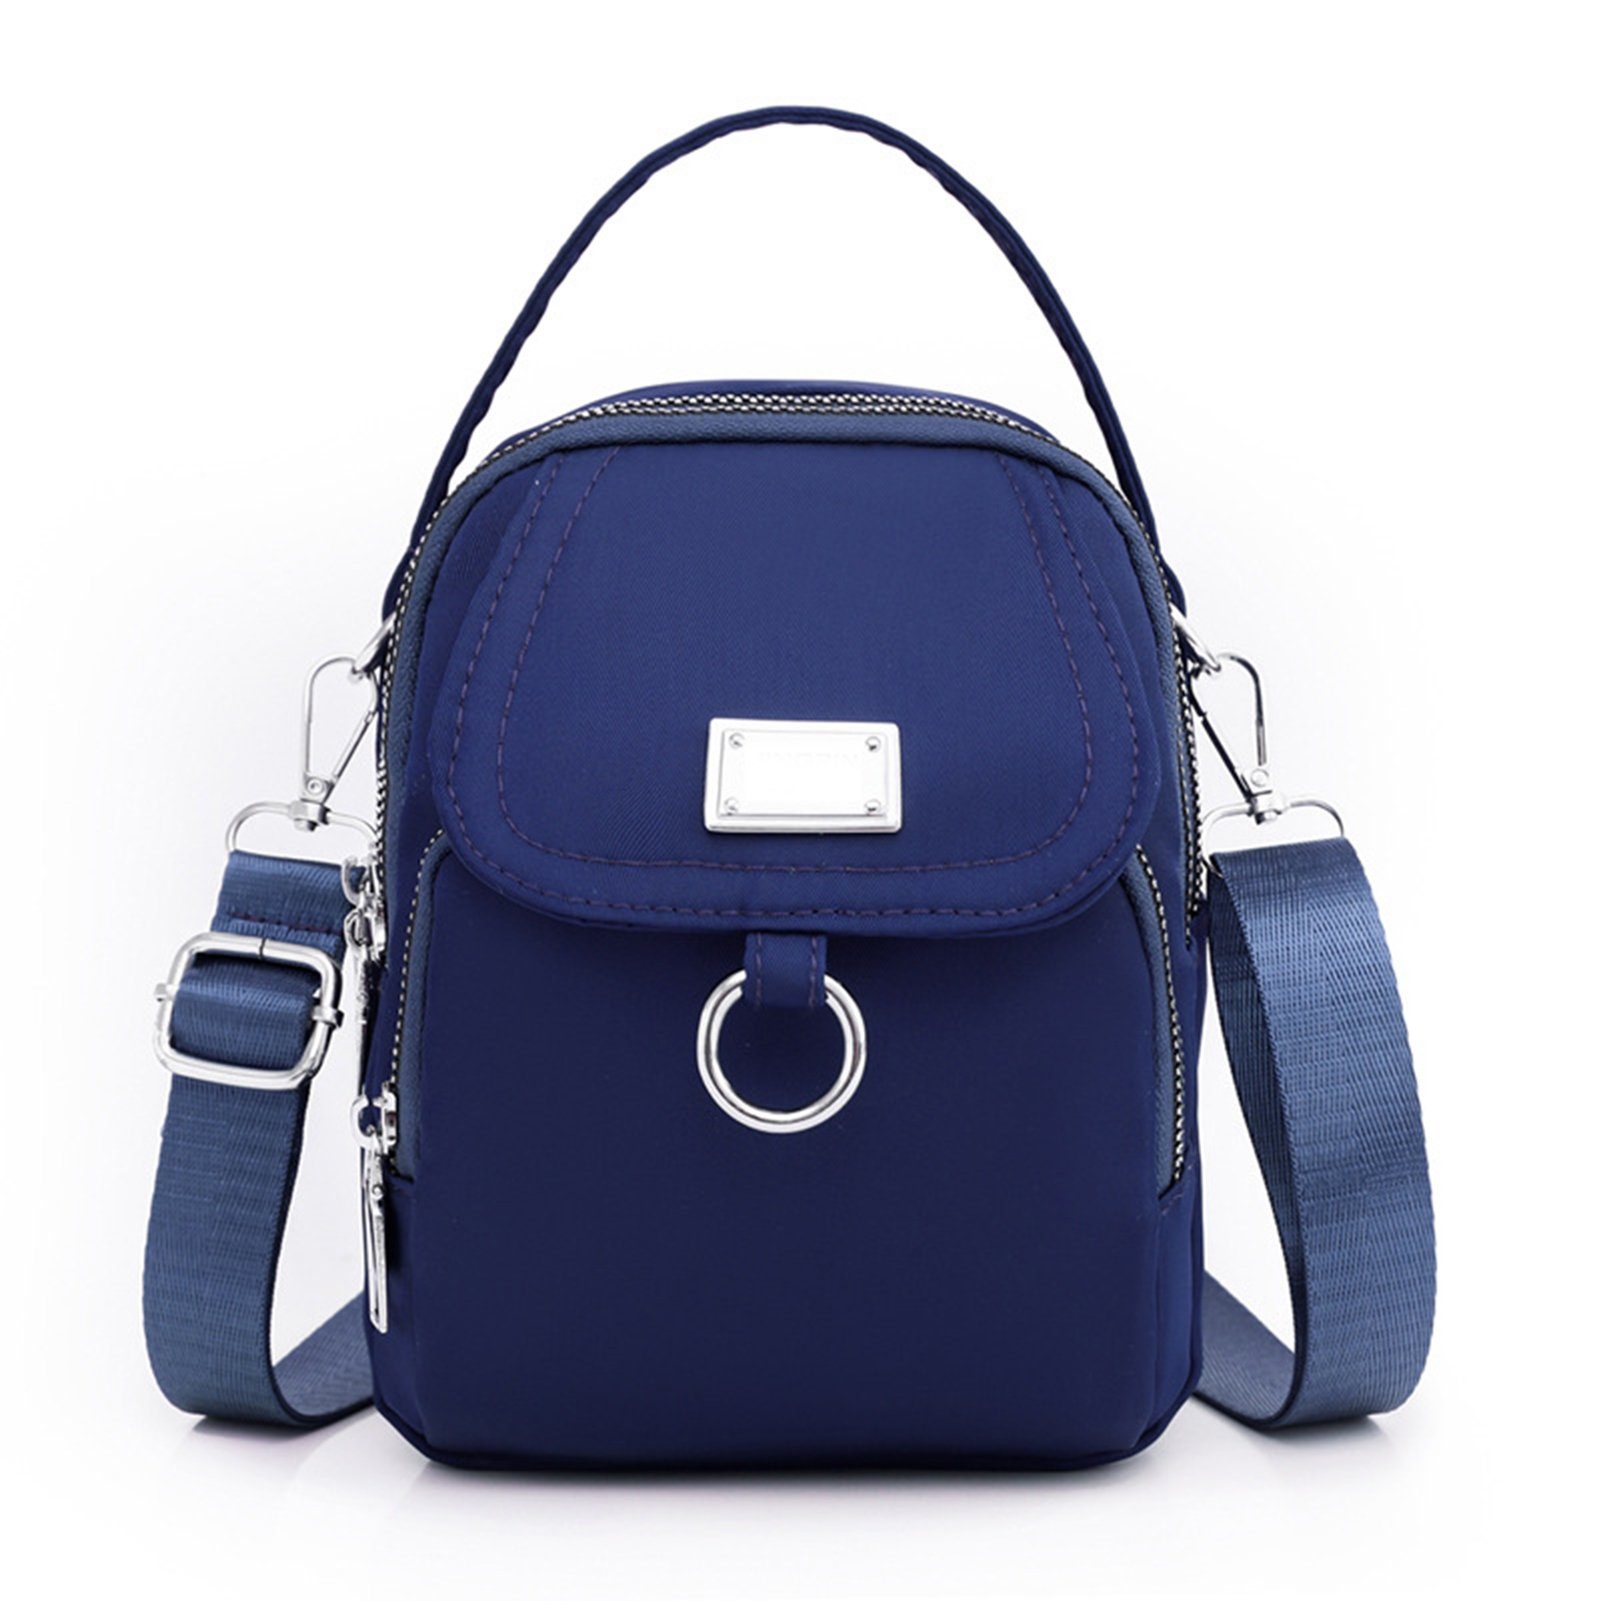 Blusmart Bag Umhängetasche Damen-Umhängetasche, blue Reißverschluss-Schultertasche, sapphire Crossbody